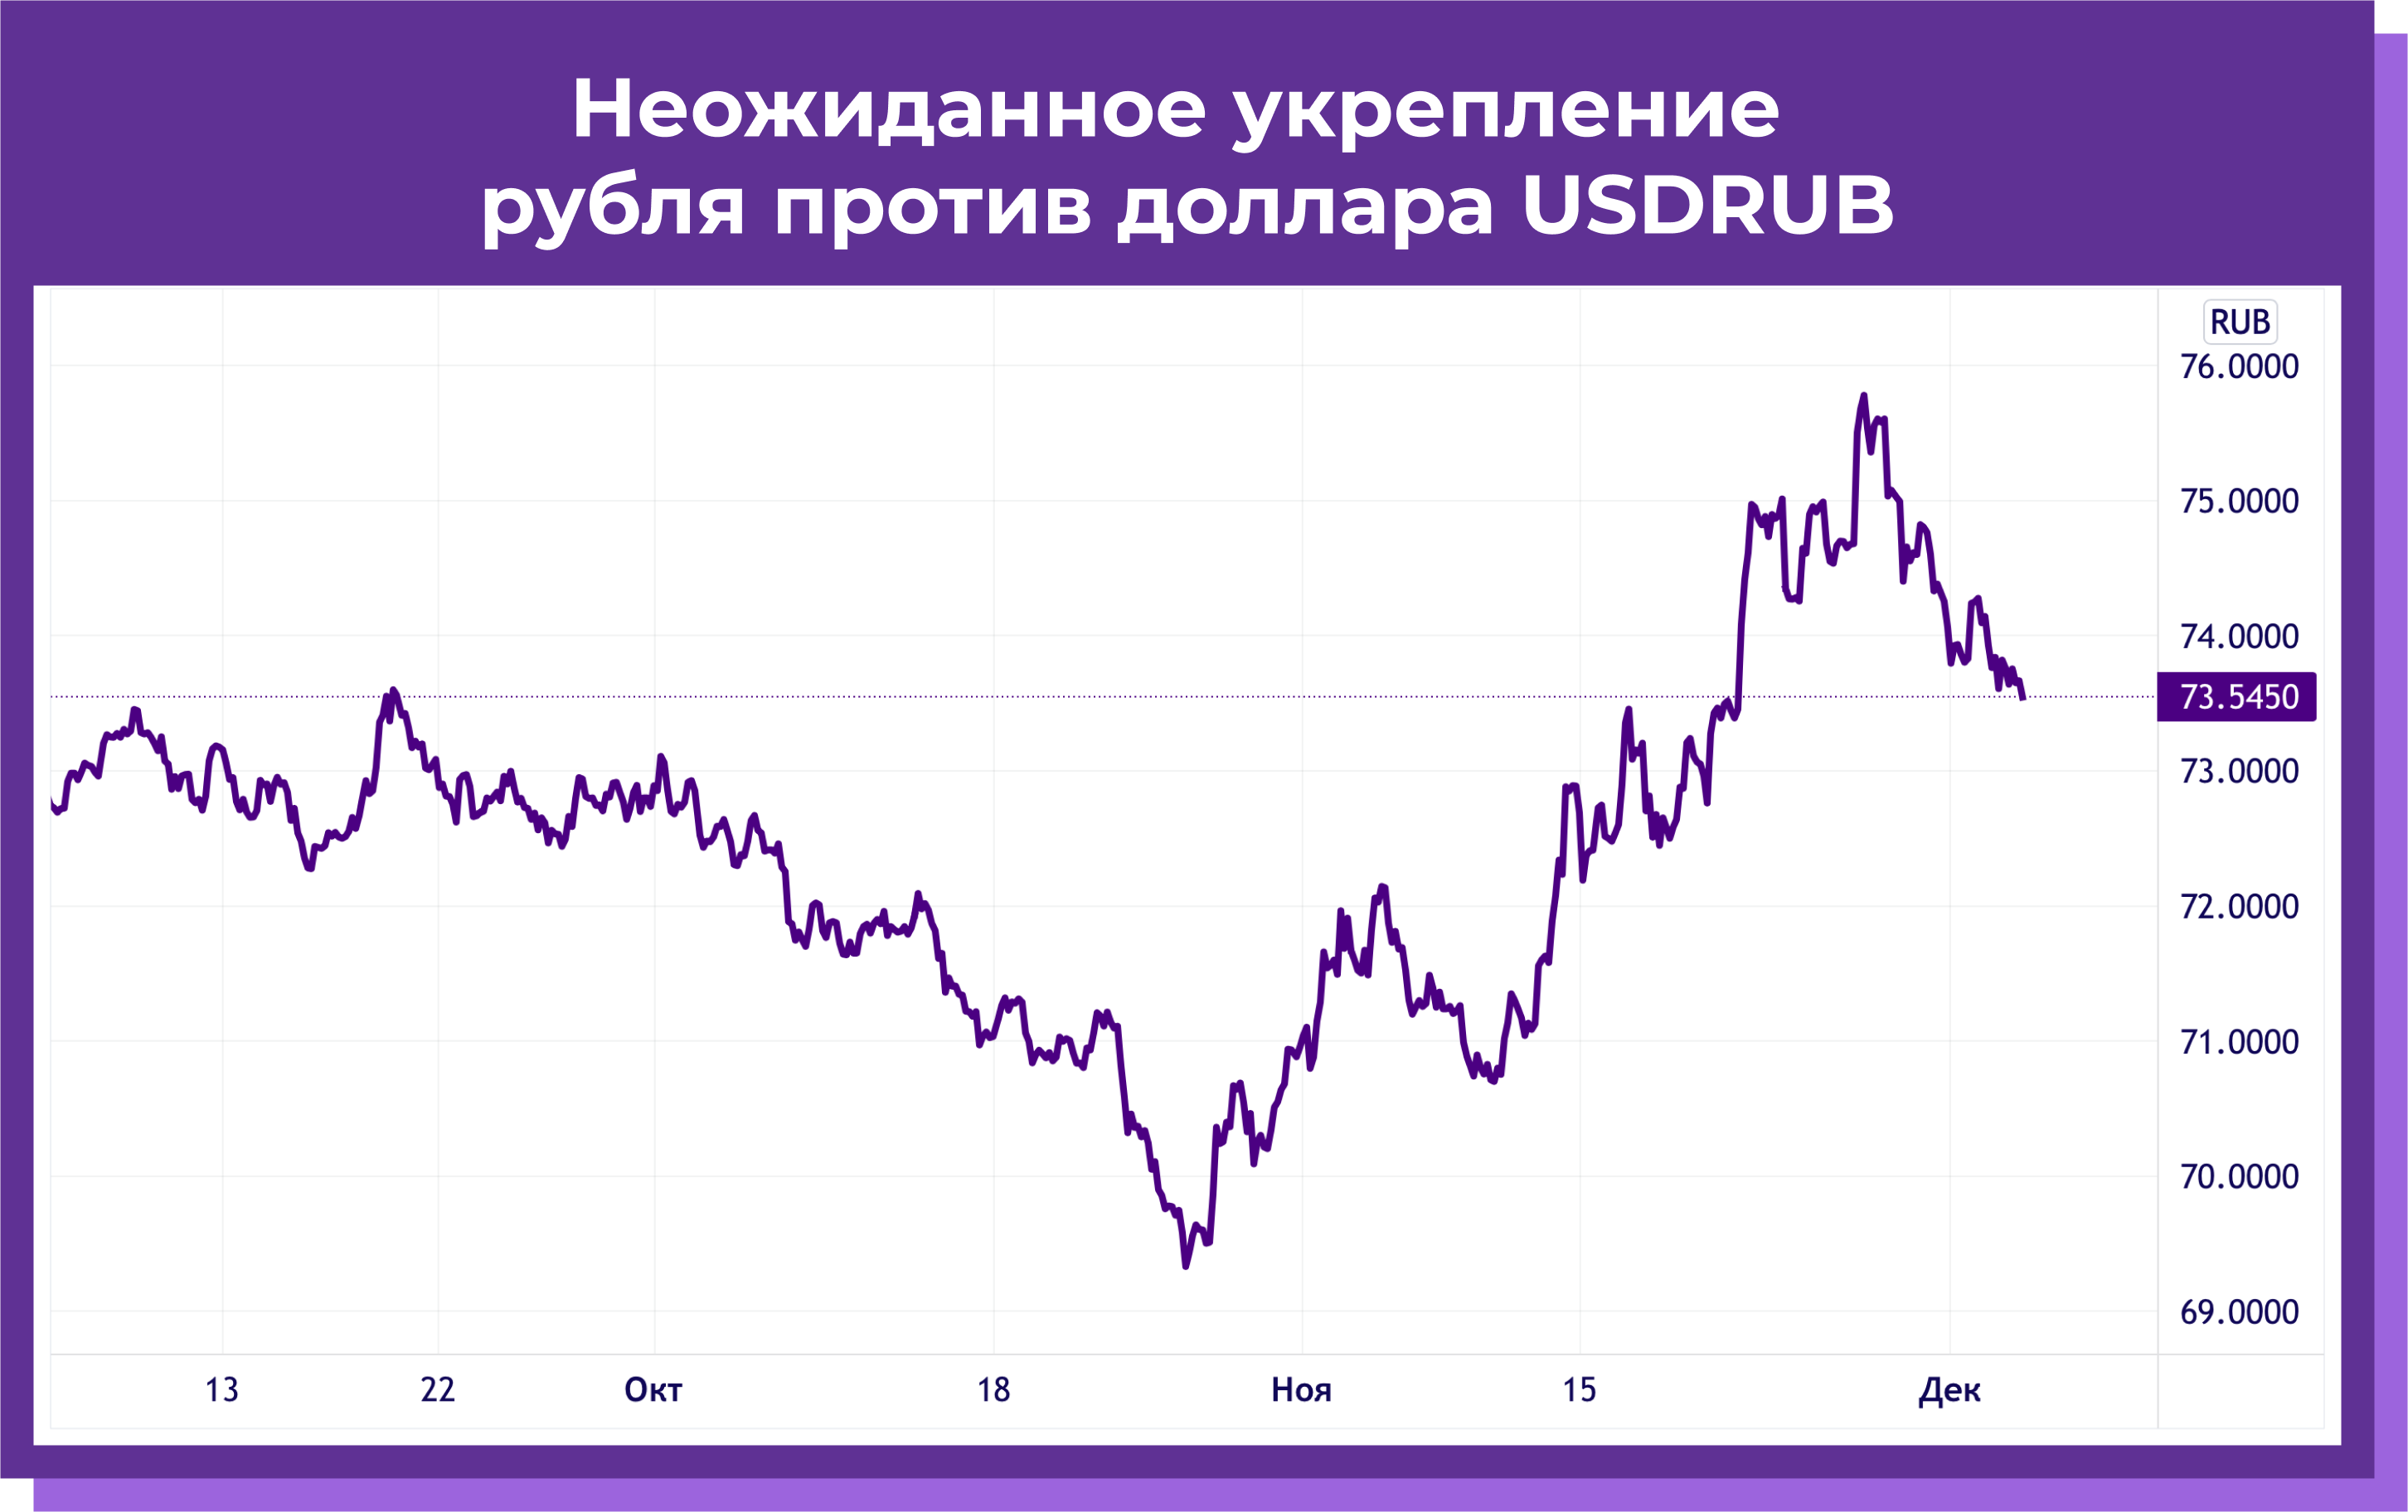 Рис. 7 Неожиданное укрепление рубля против доллара USDRUB